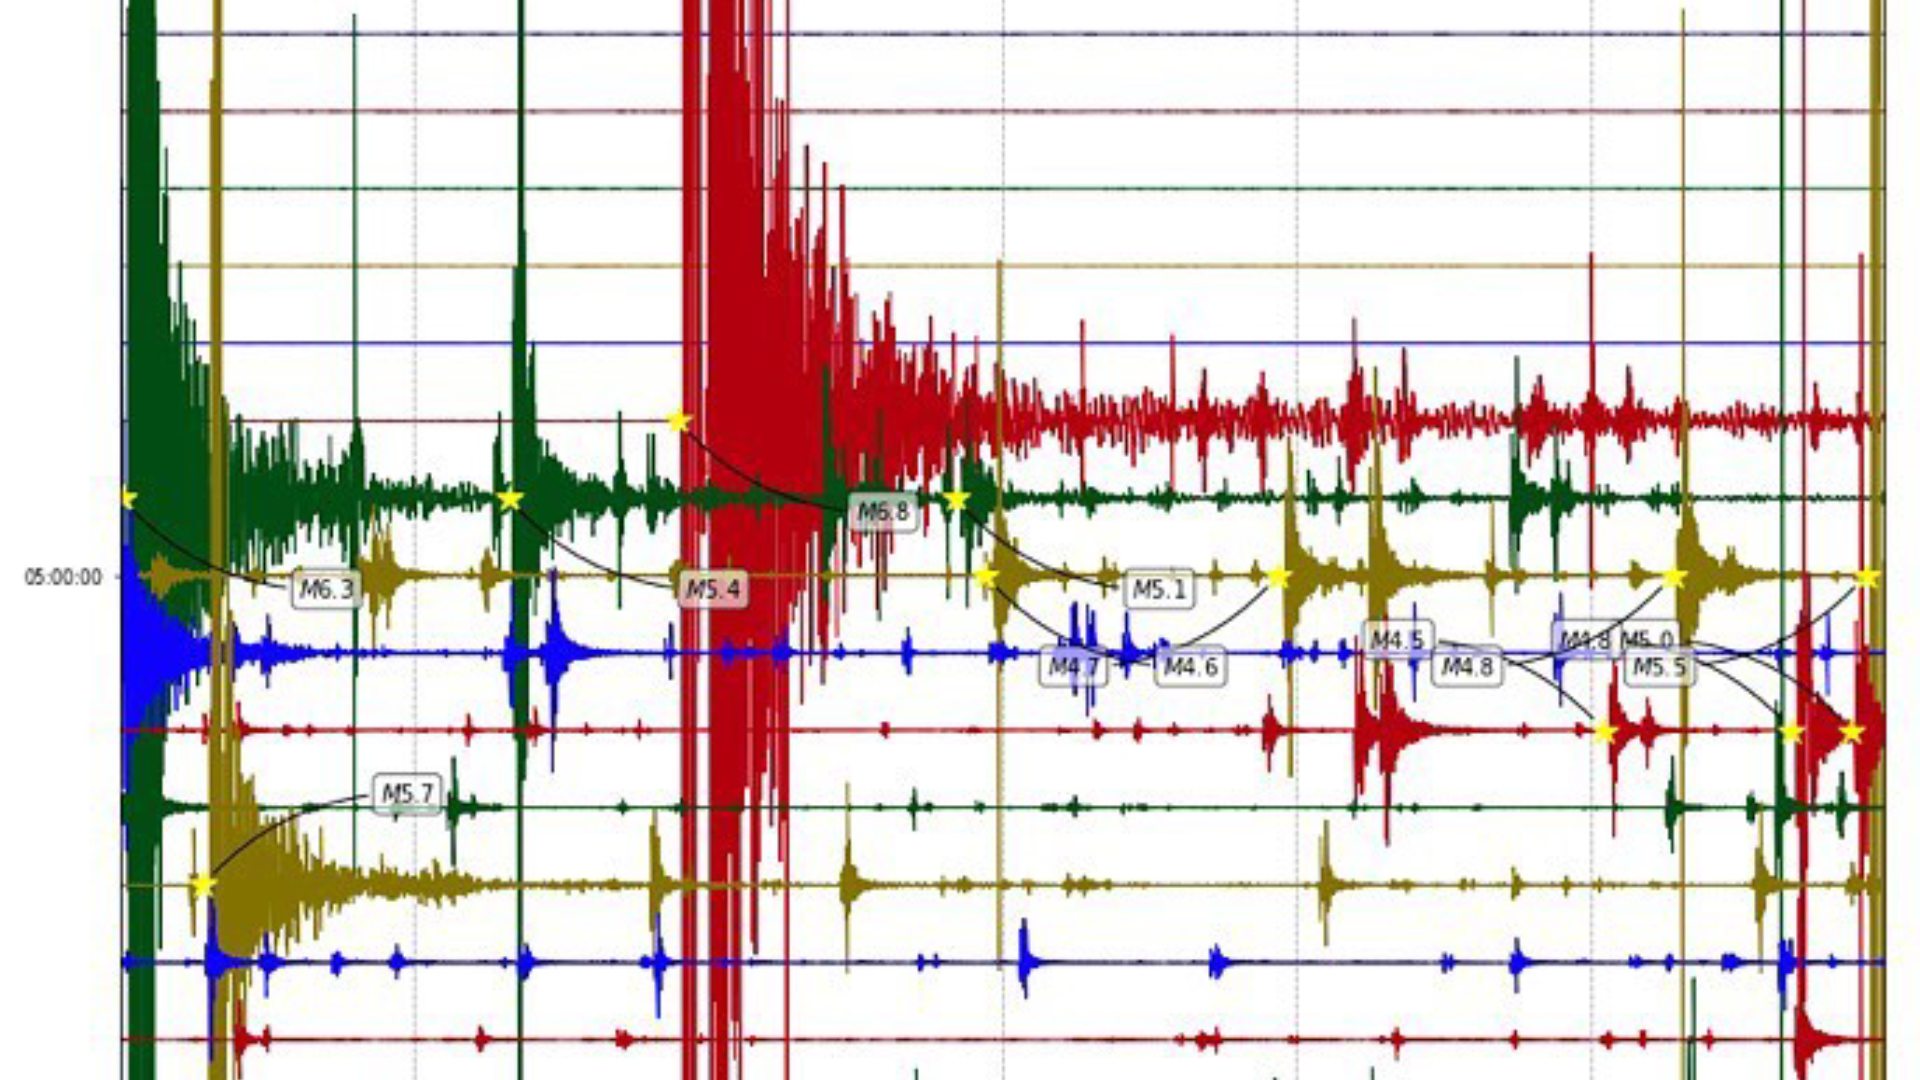 El sismo de mayor magnitud que remeció la zona centro norte